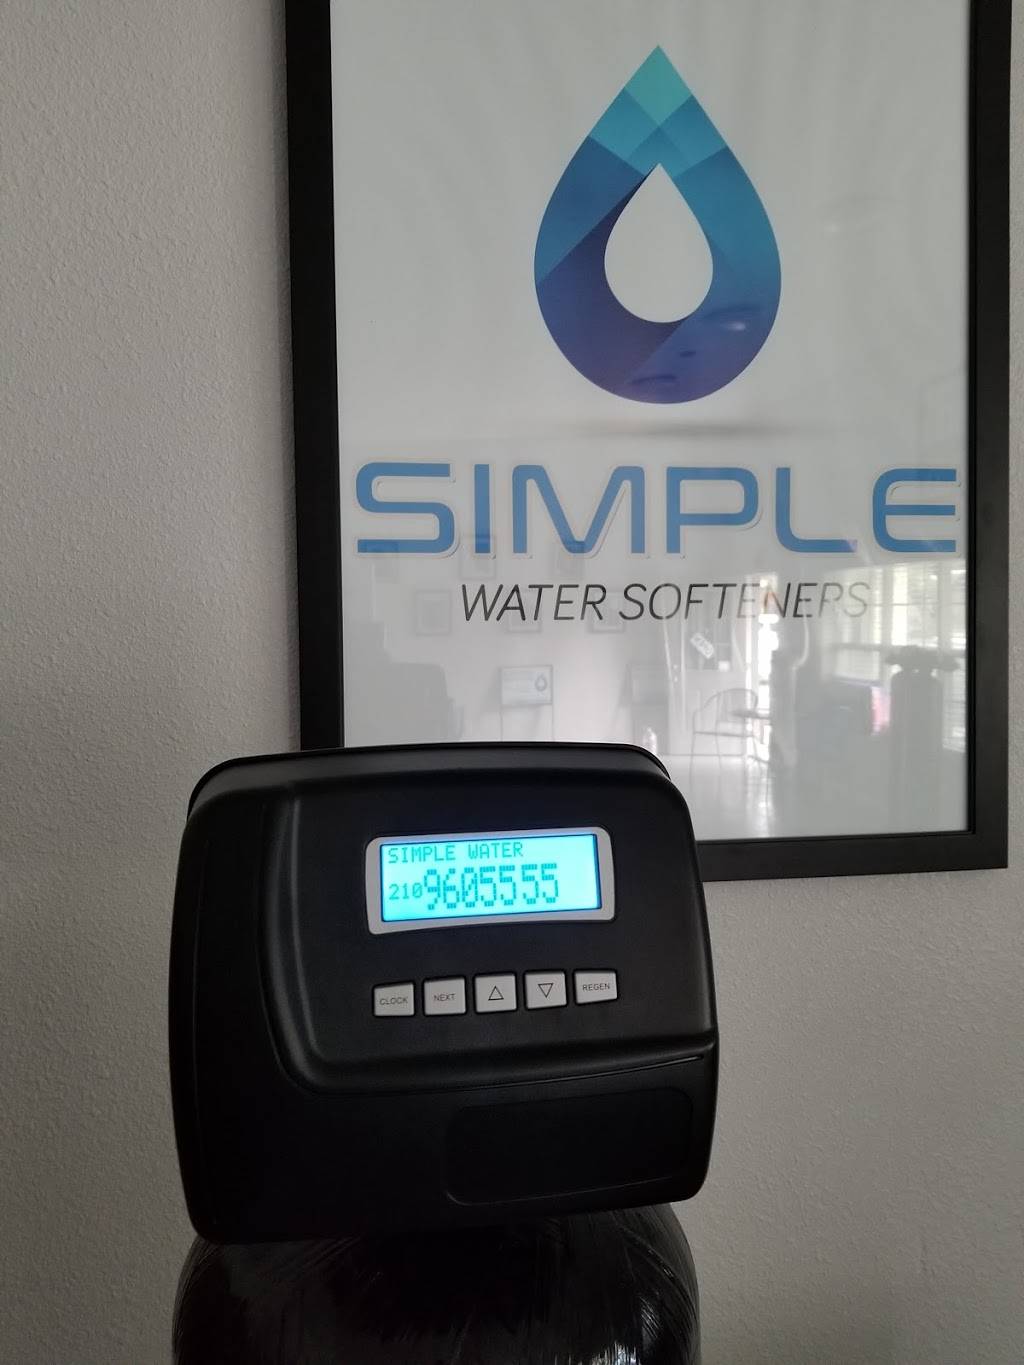 Simple Water Softeners | 26610 US-281, San Antonio, TX 78260 | Phone: (210) 960-2555